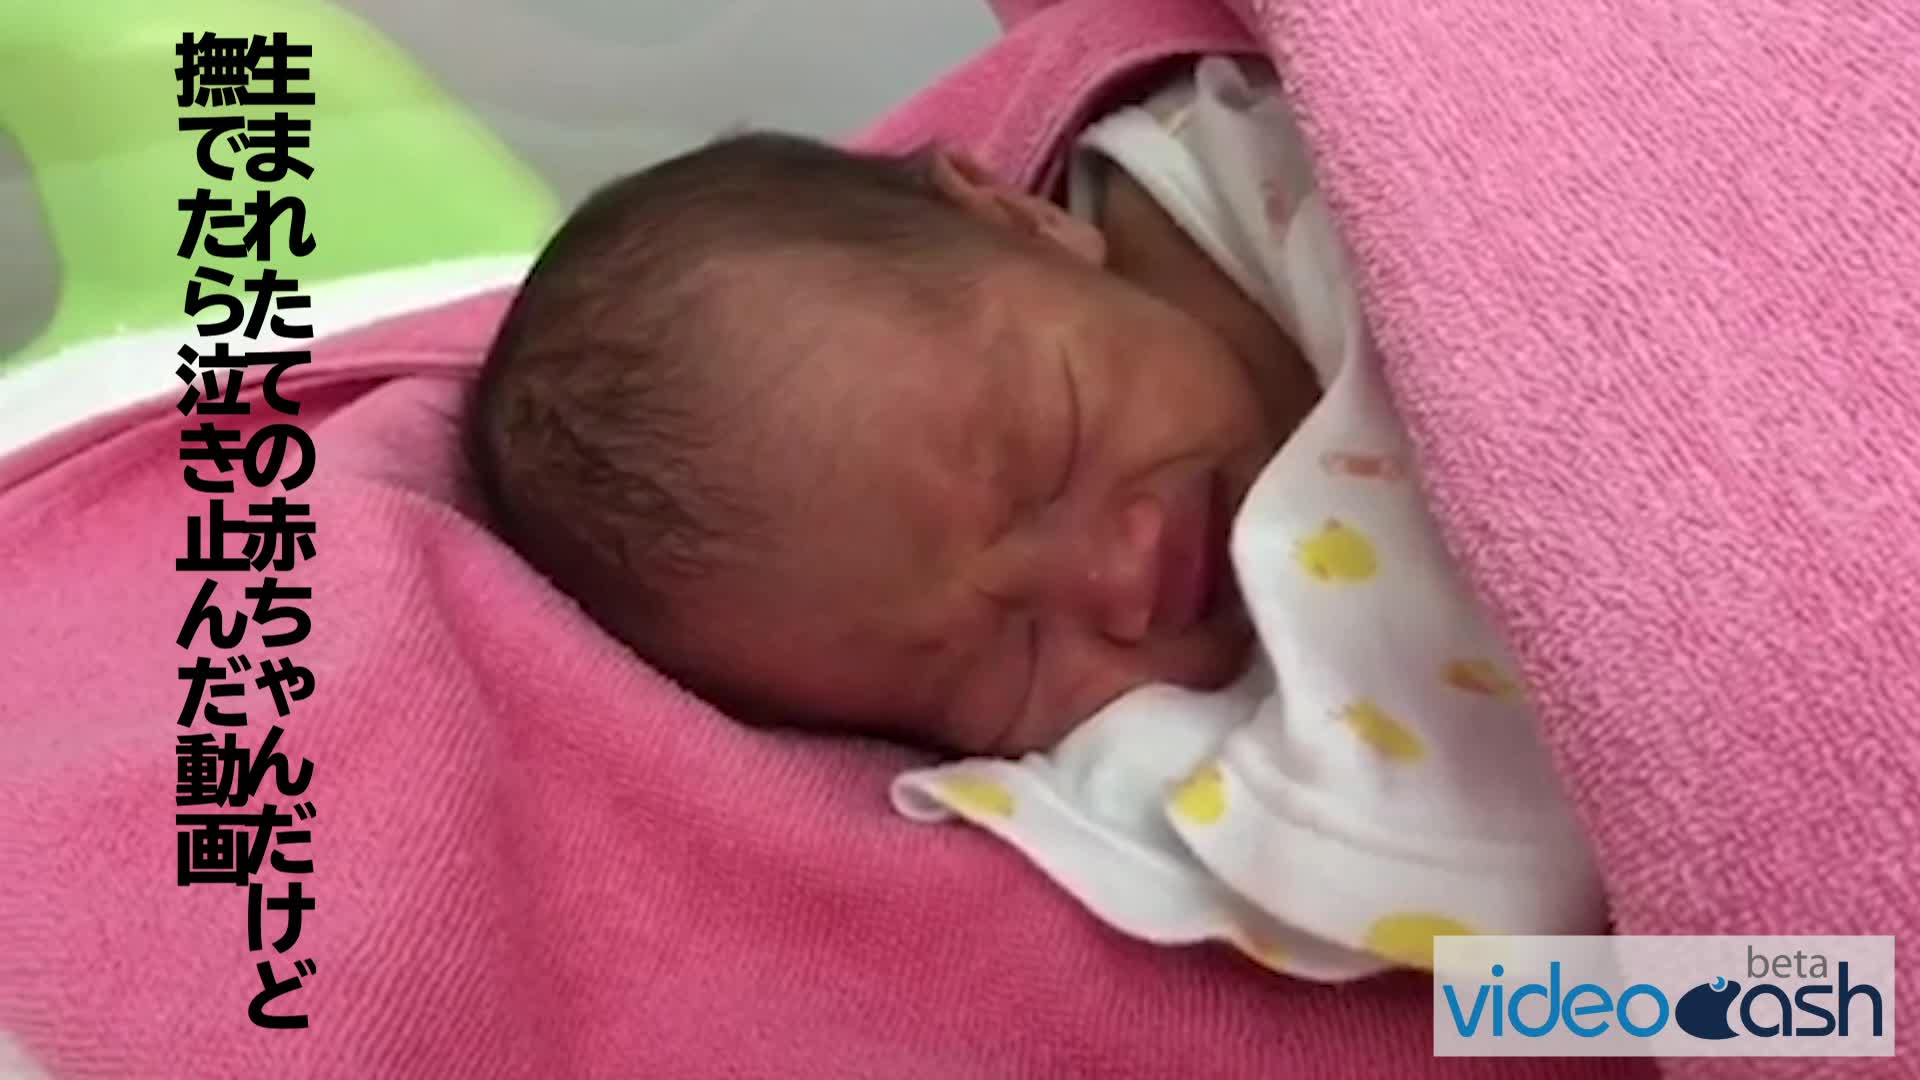 生まれたの赤ちゃんが泣いていましたが、撫でたら泣き止んだ動画。 VideoCash/ビデオキャッシュ Yahoo! JAPAN